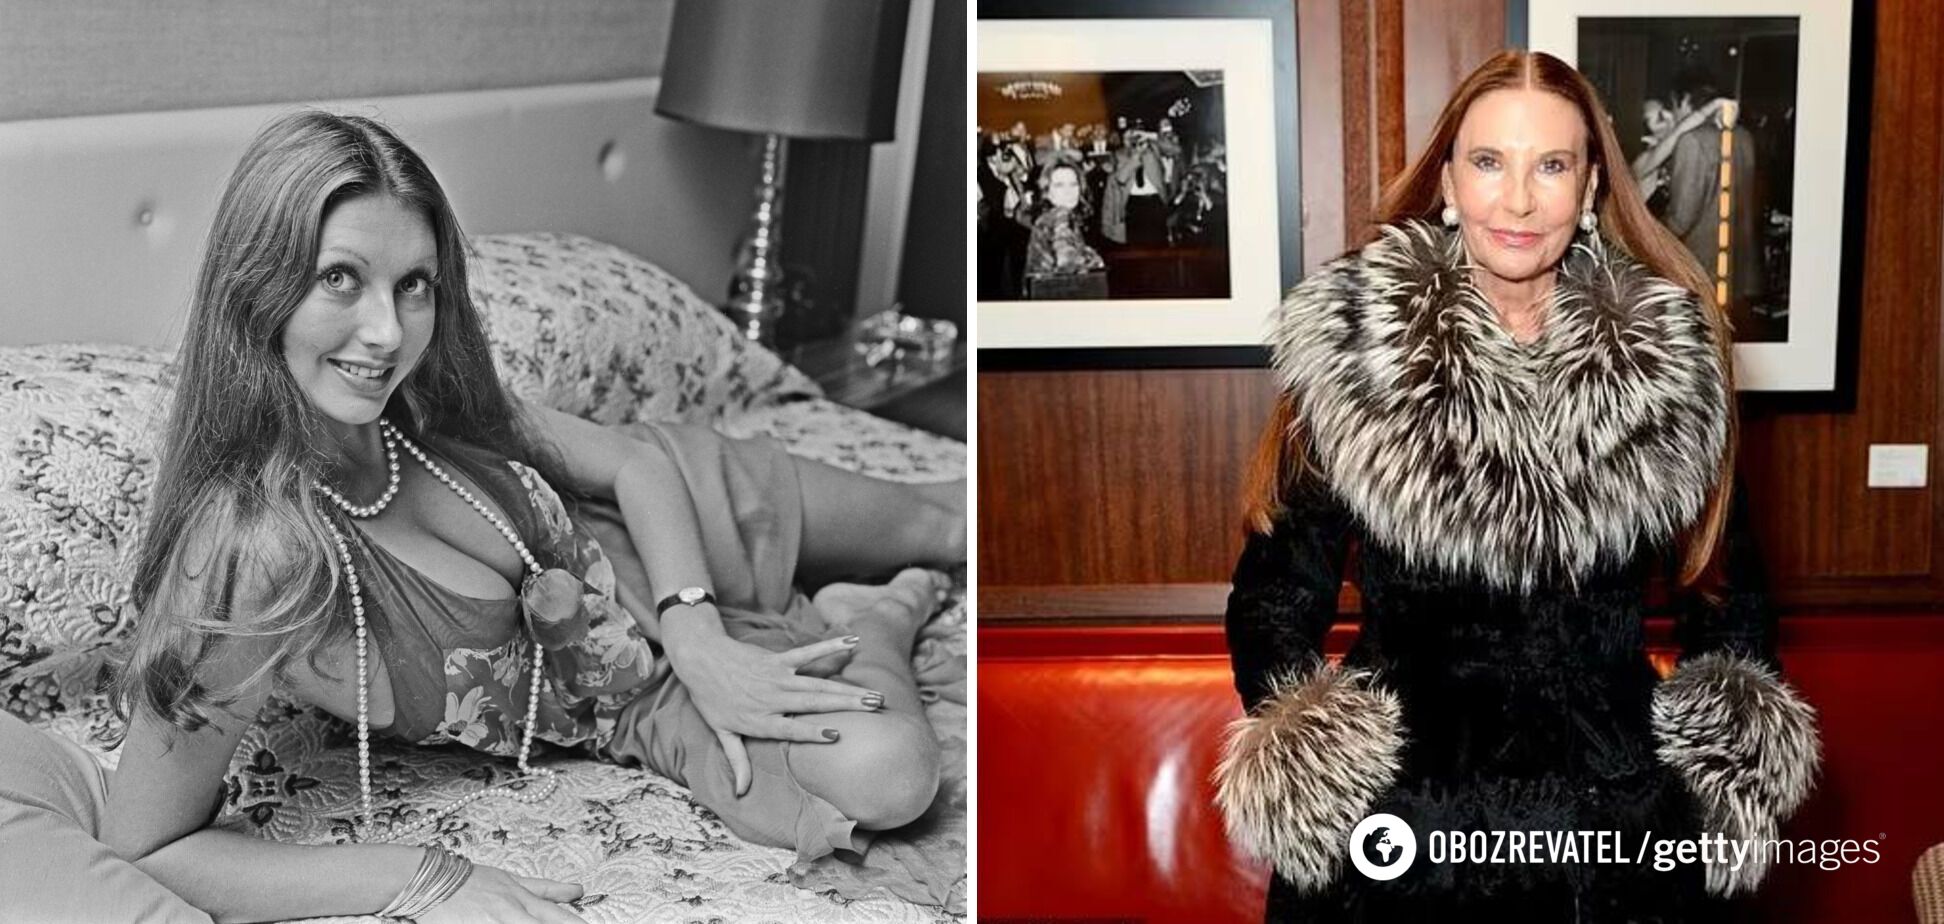 "Все дело в деньгах": как выглядела первая модель Playboy и как сложилась ее судьба. Фото с разницей в 50 лет